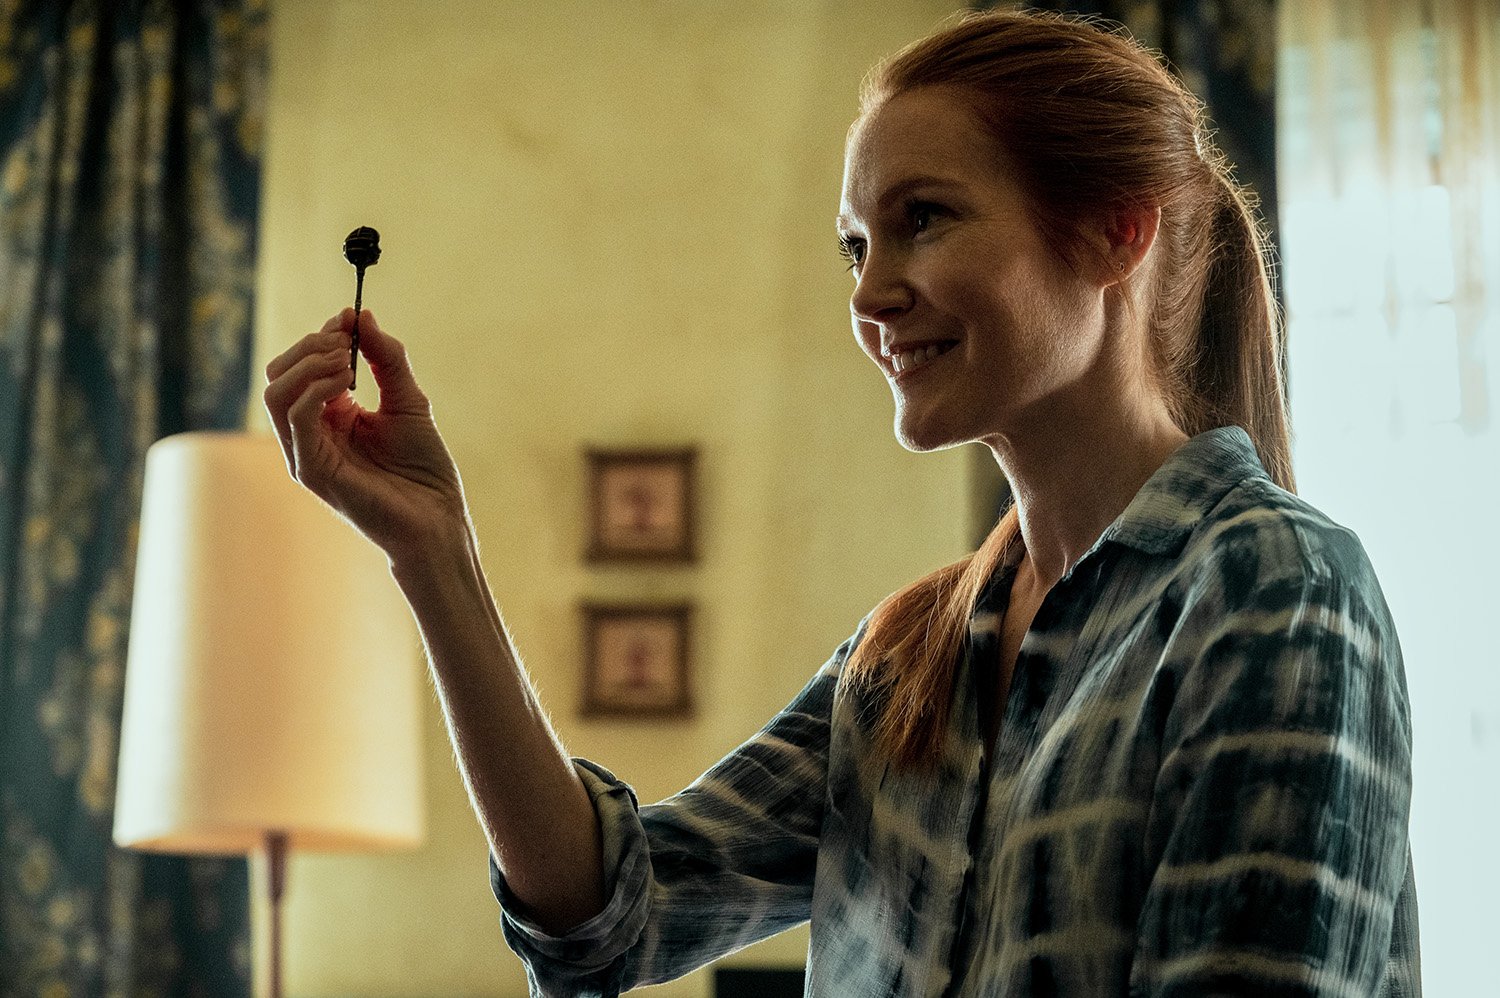 Darby Stanchfield as Nina Locke holding the Head Key in Locke & Key Season 3 on Netflix